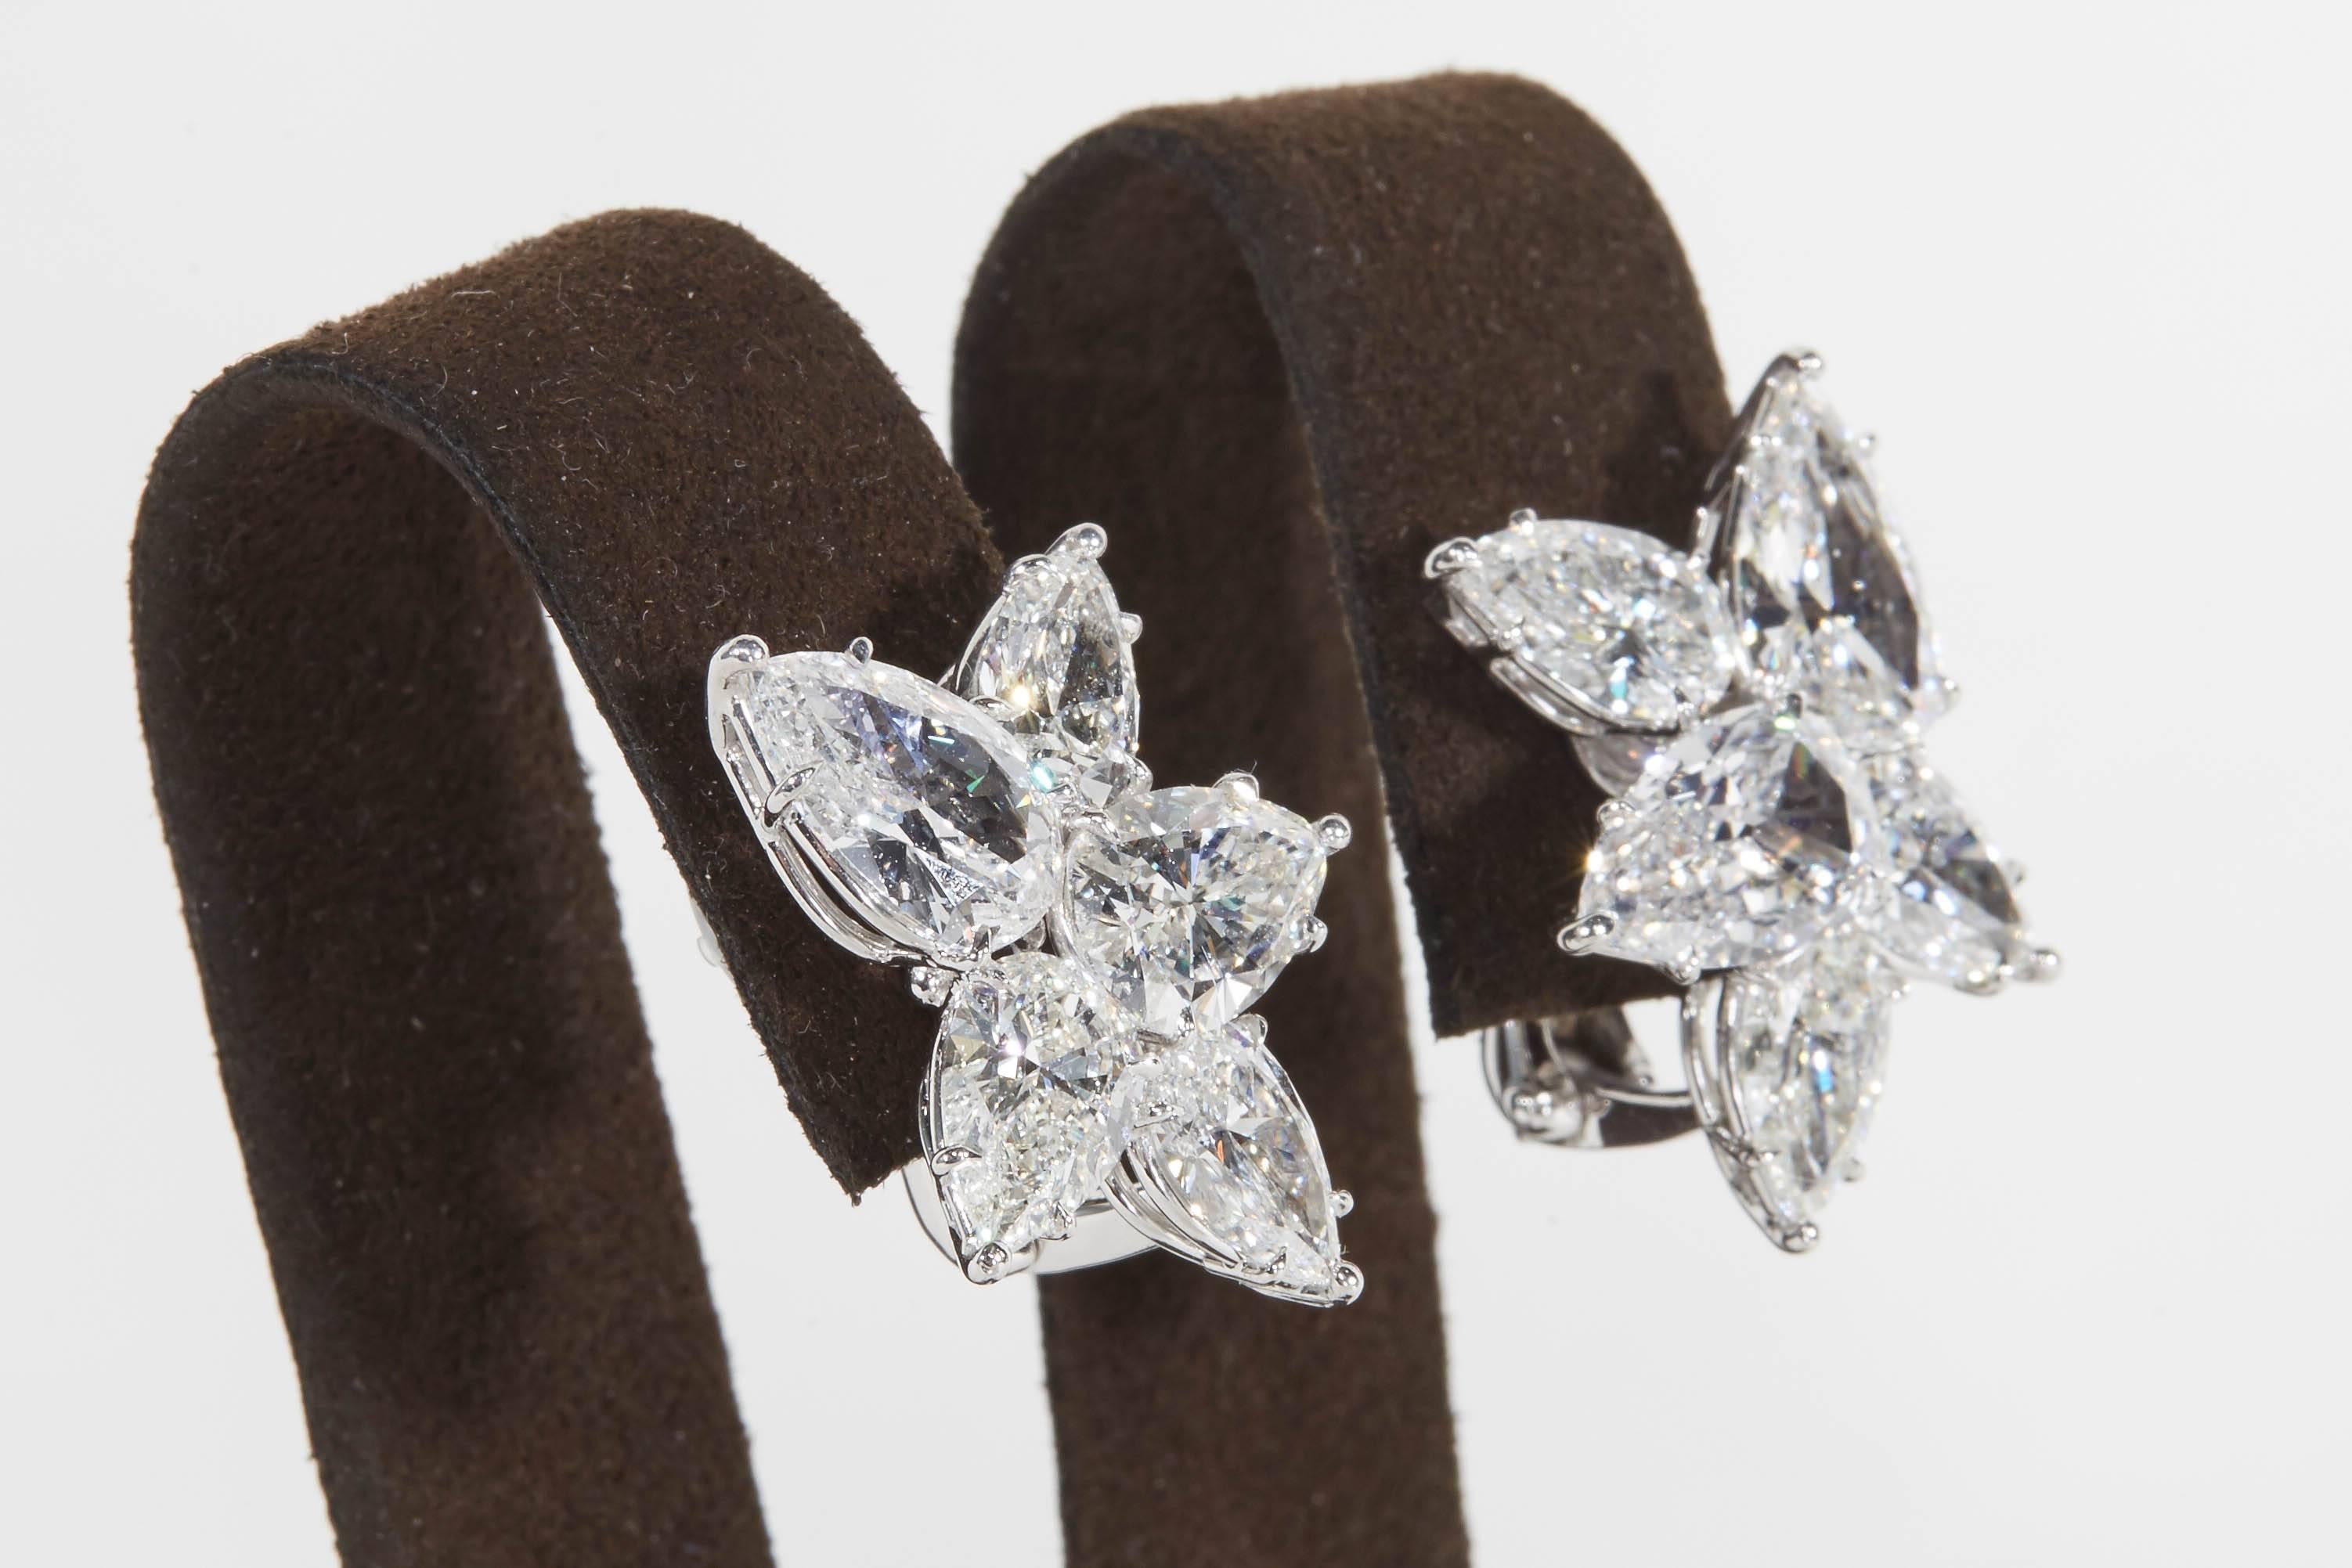 
Ein wichtiges Paar Diamant-Cluster-Ohrringe.

11.82 Karat farblose weiße birnenförmige Diamanten 

Handgefertigt in New York, gefasst in Platin.

Ein fabelhaftes Paar Ohrringe - sie sind wunderschön in Person.  

Knapp ein Zoll vom höchsten bis zum